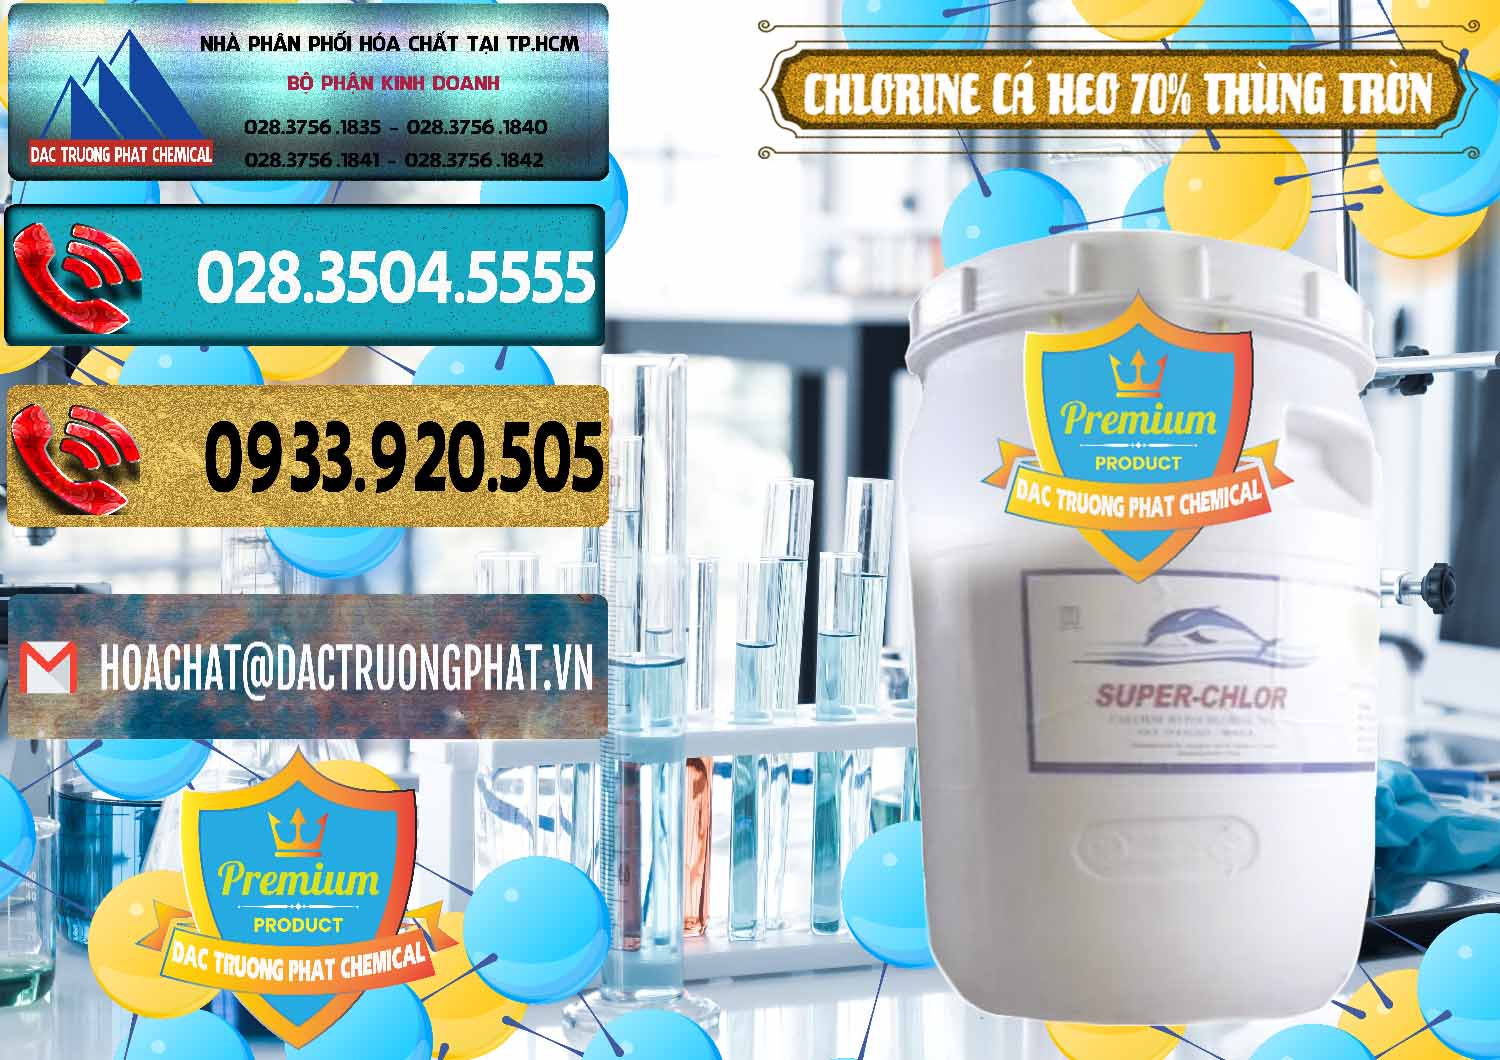 Cty bán và phân phối Clorin - Chlorine Cá Heo 70% Super Chlor Thùng Tròn Nắp Trắng Trung Quốc China - 0239 - Phân phối & cung ứng hóa chất tại TP.HCM - hoachatdetnhuom.com